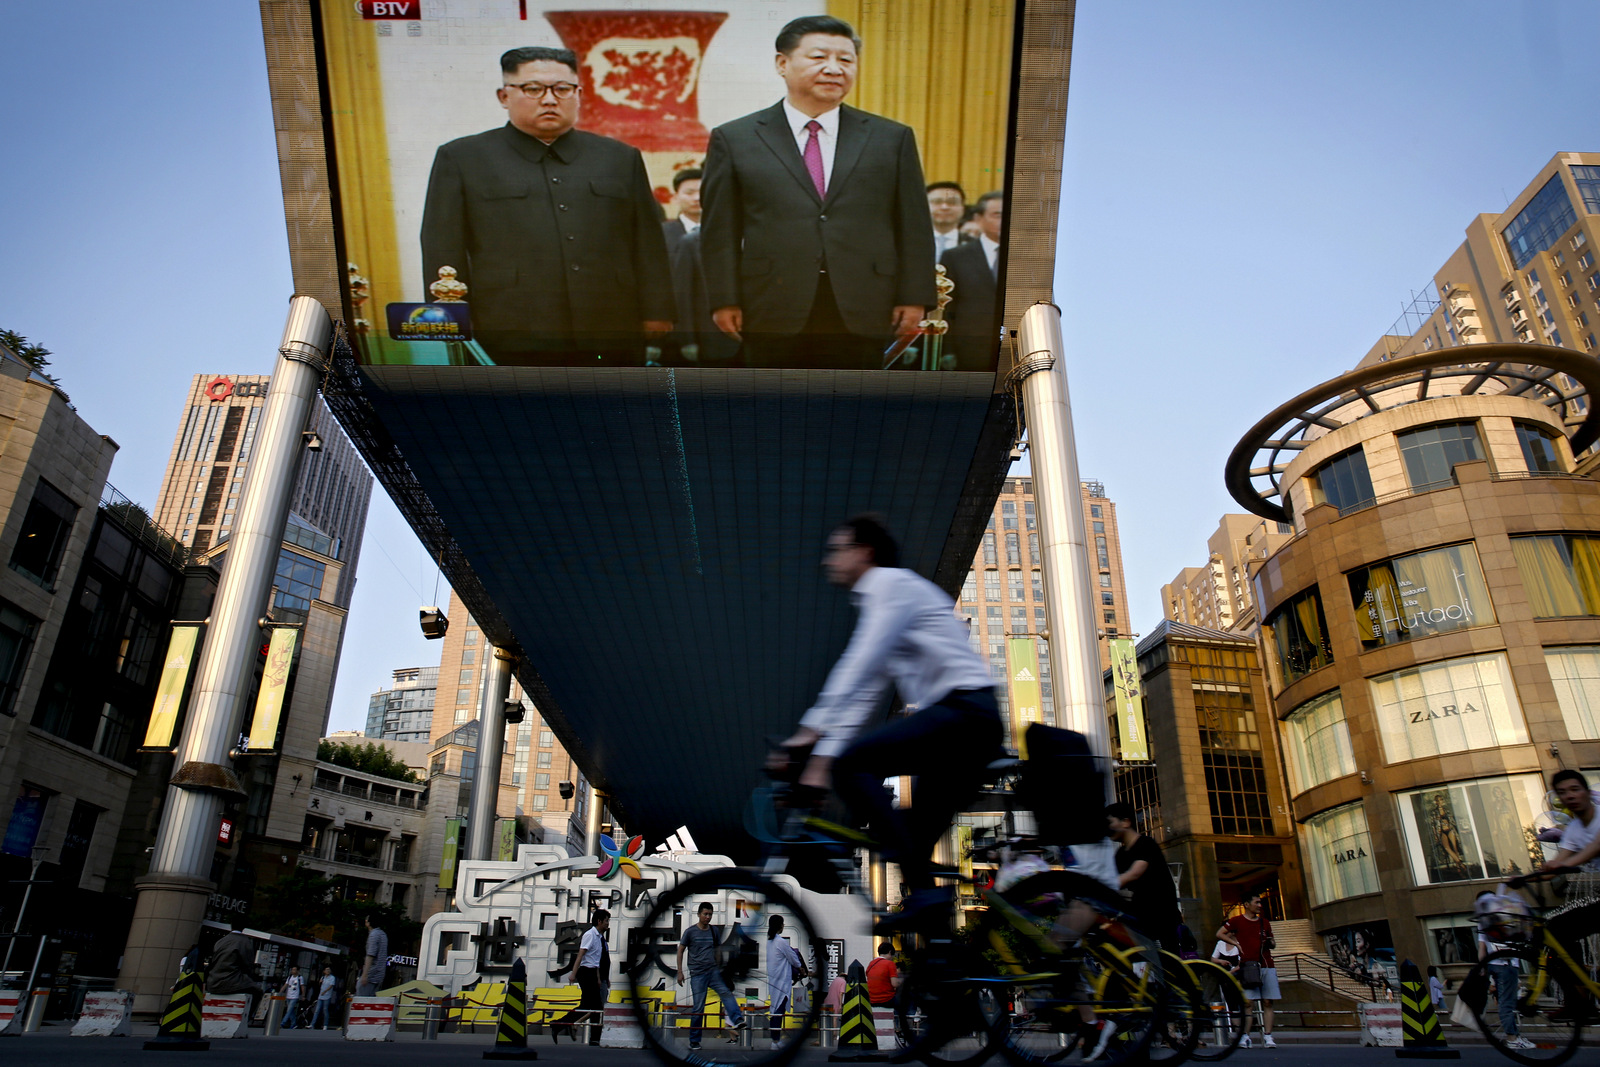 一个巨大的电视屏幕播放朝鲜领导人金正恩和中国国家主席习近平在2018年6月19日在北京举行的会议。美联社